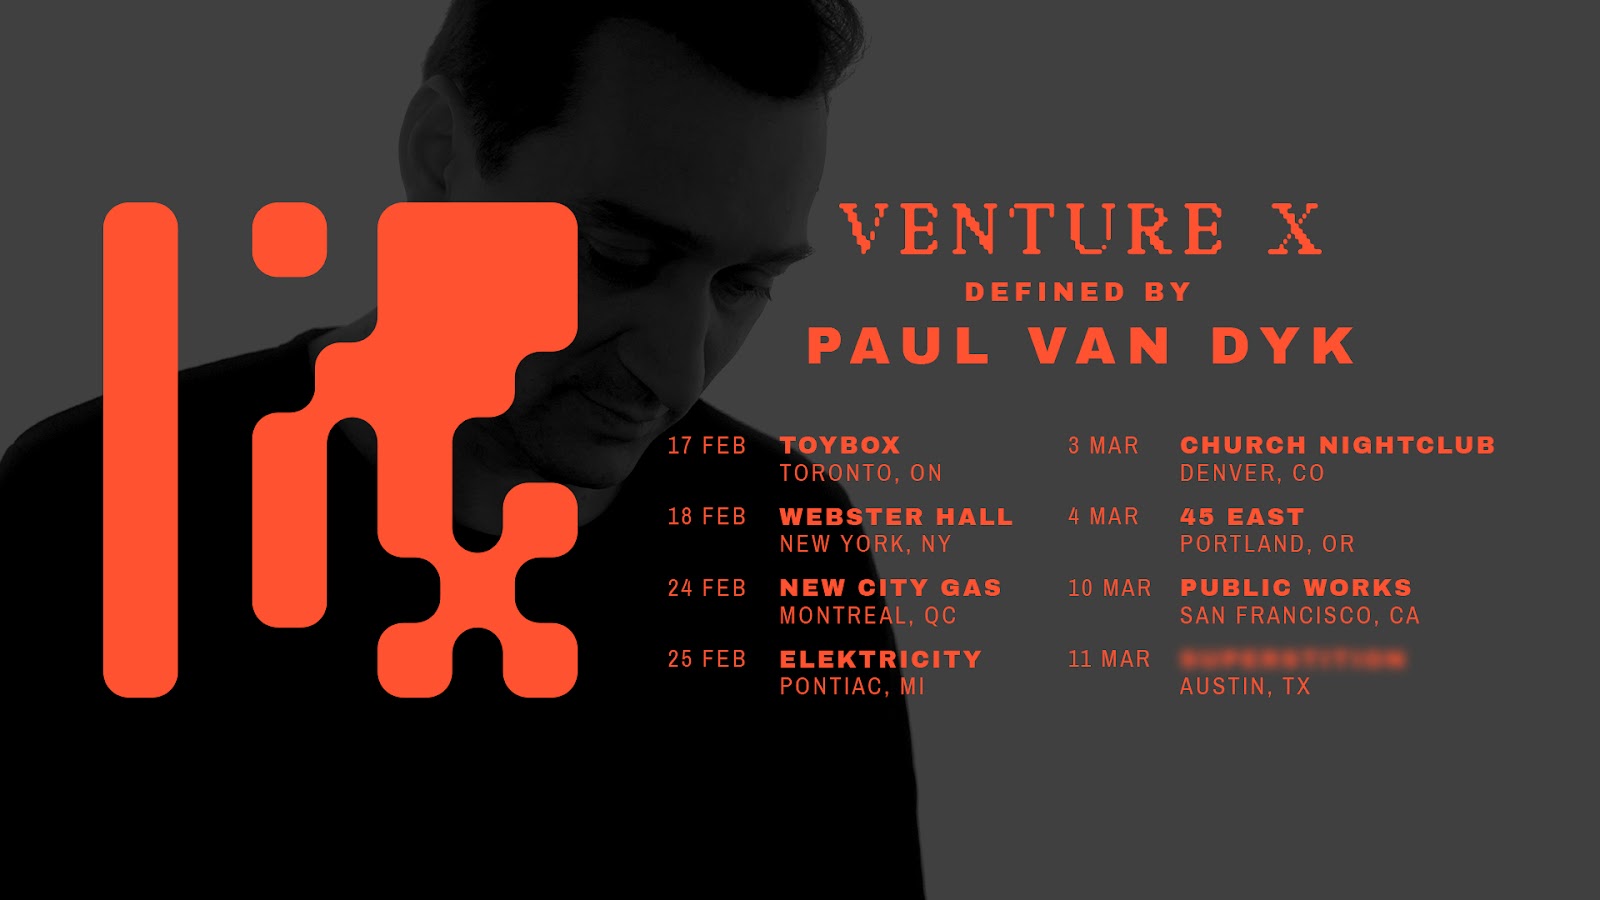 Paul van Dyk announces new VENTURE X event concept